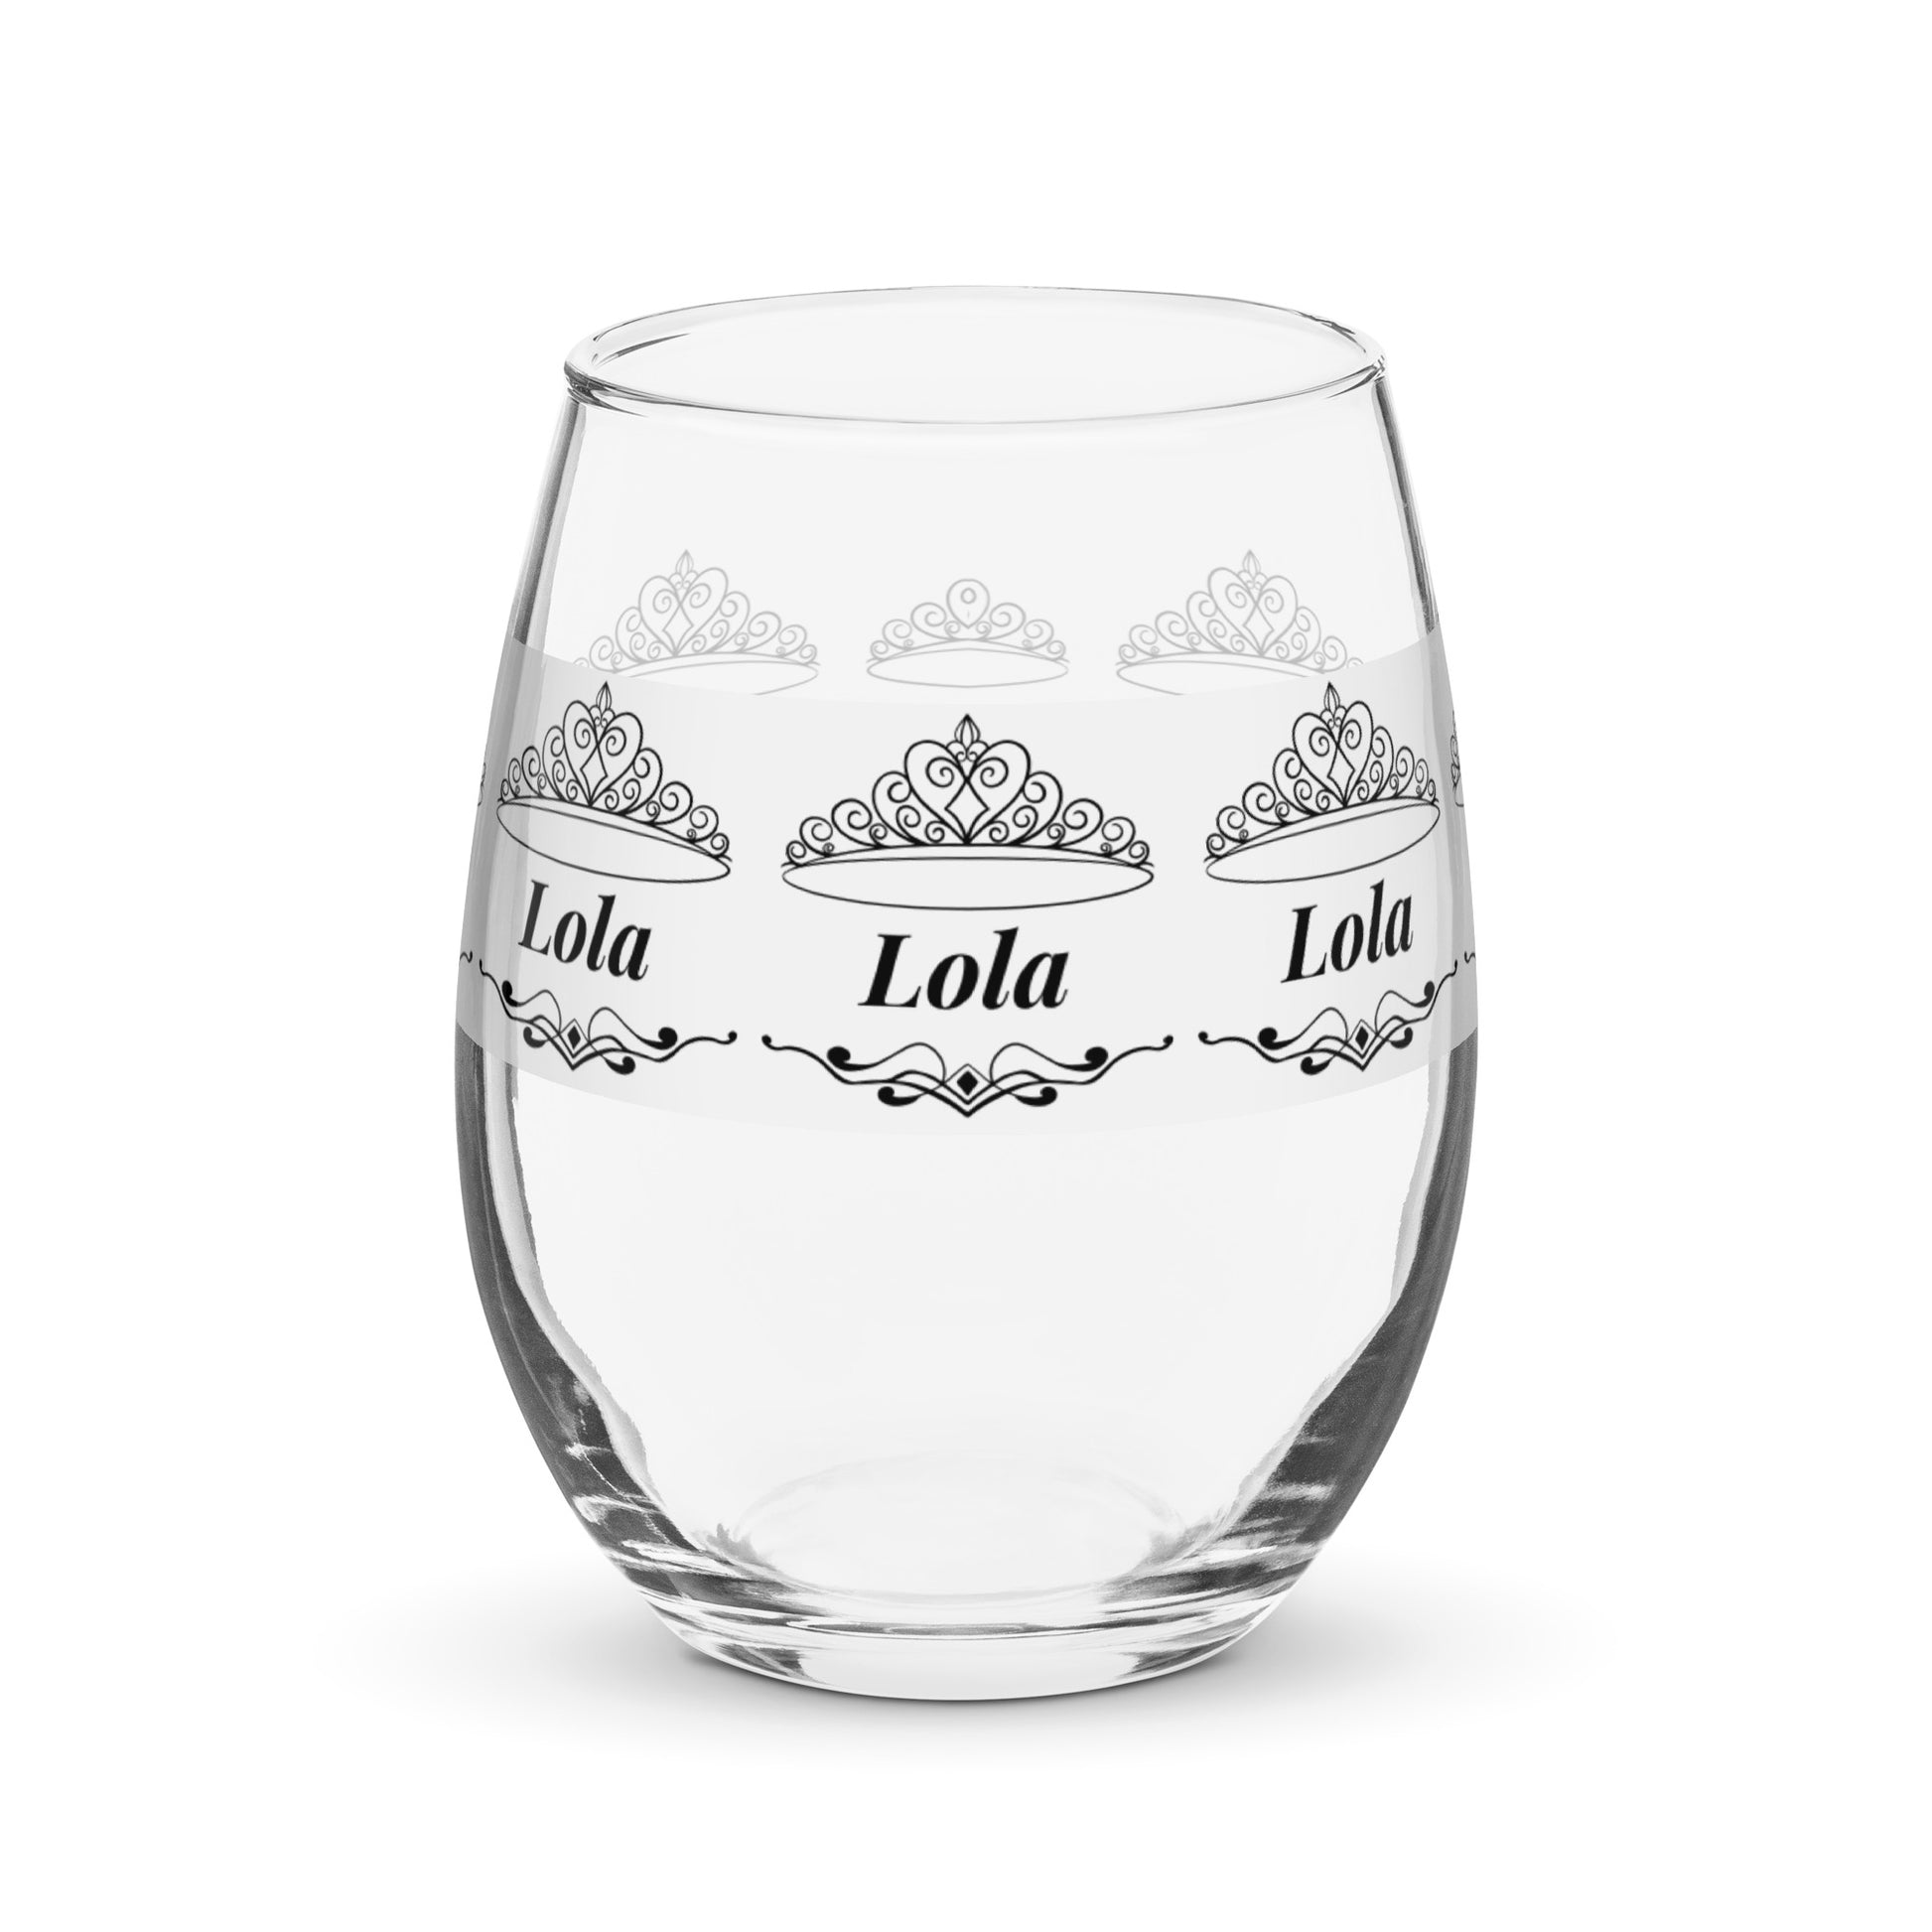 Lola name wine glass personalized wine glass wine glass